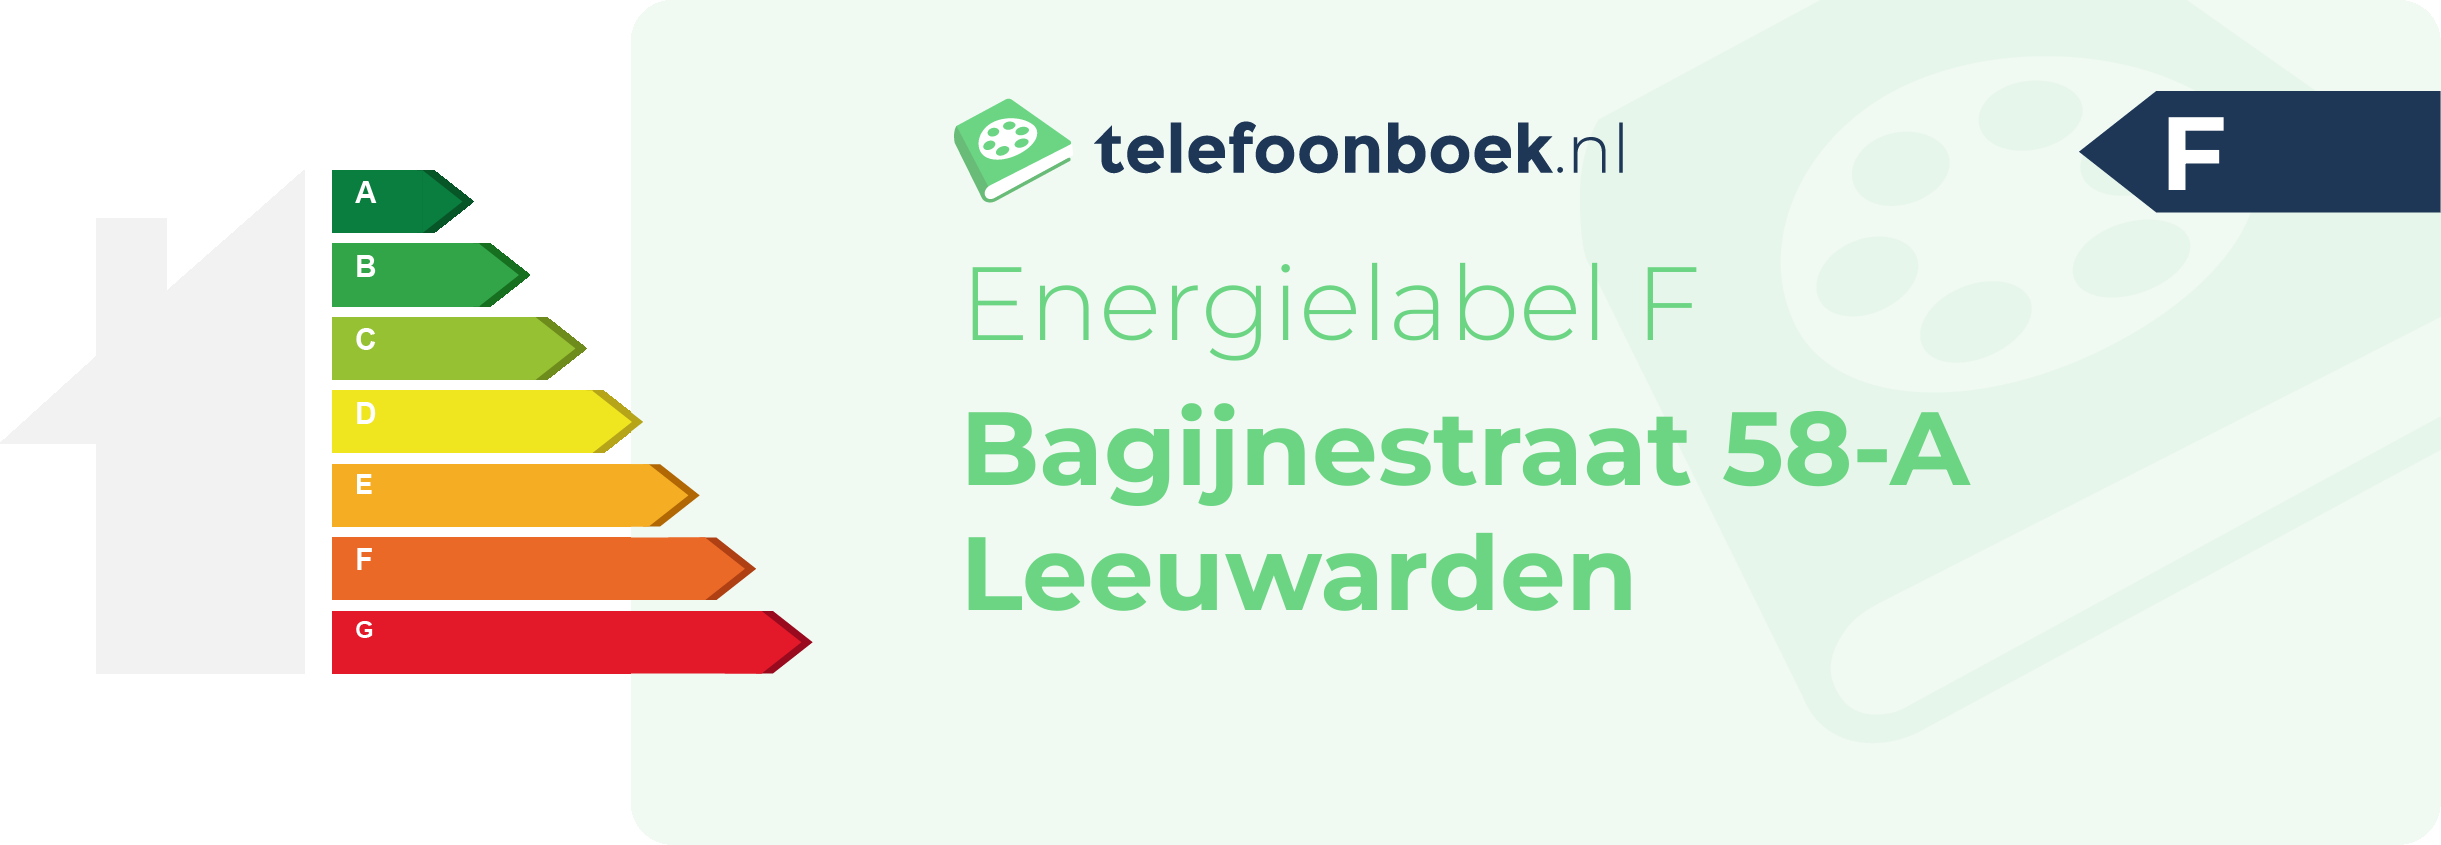 Energielabel Bagijnestraat 58-A Leeuwarden